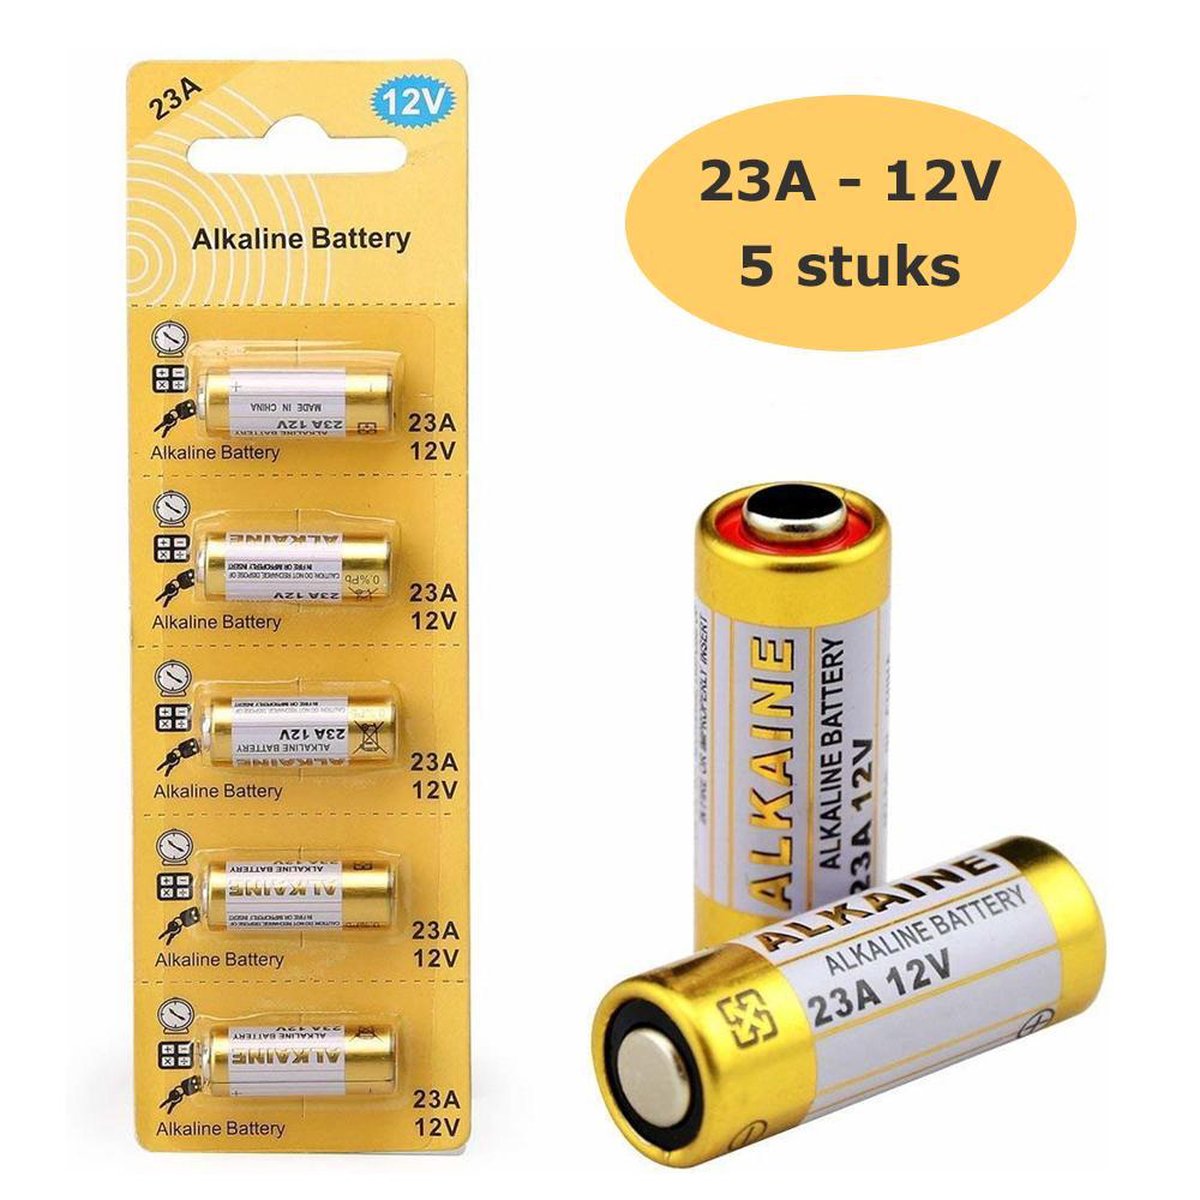 23a 12v hoge capaciteit alkaline batterijen - 5 stuks blister | bol